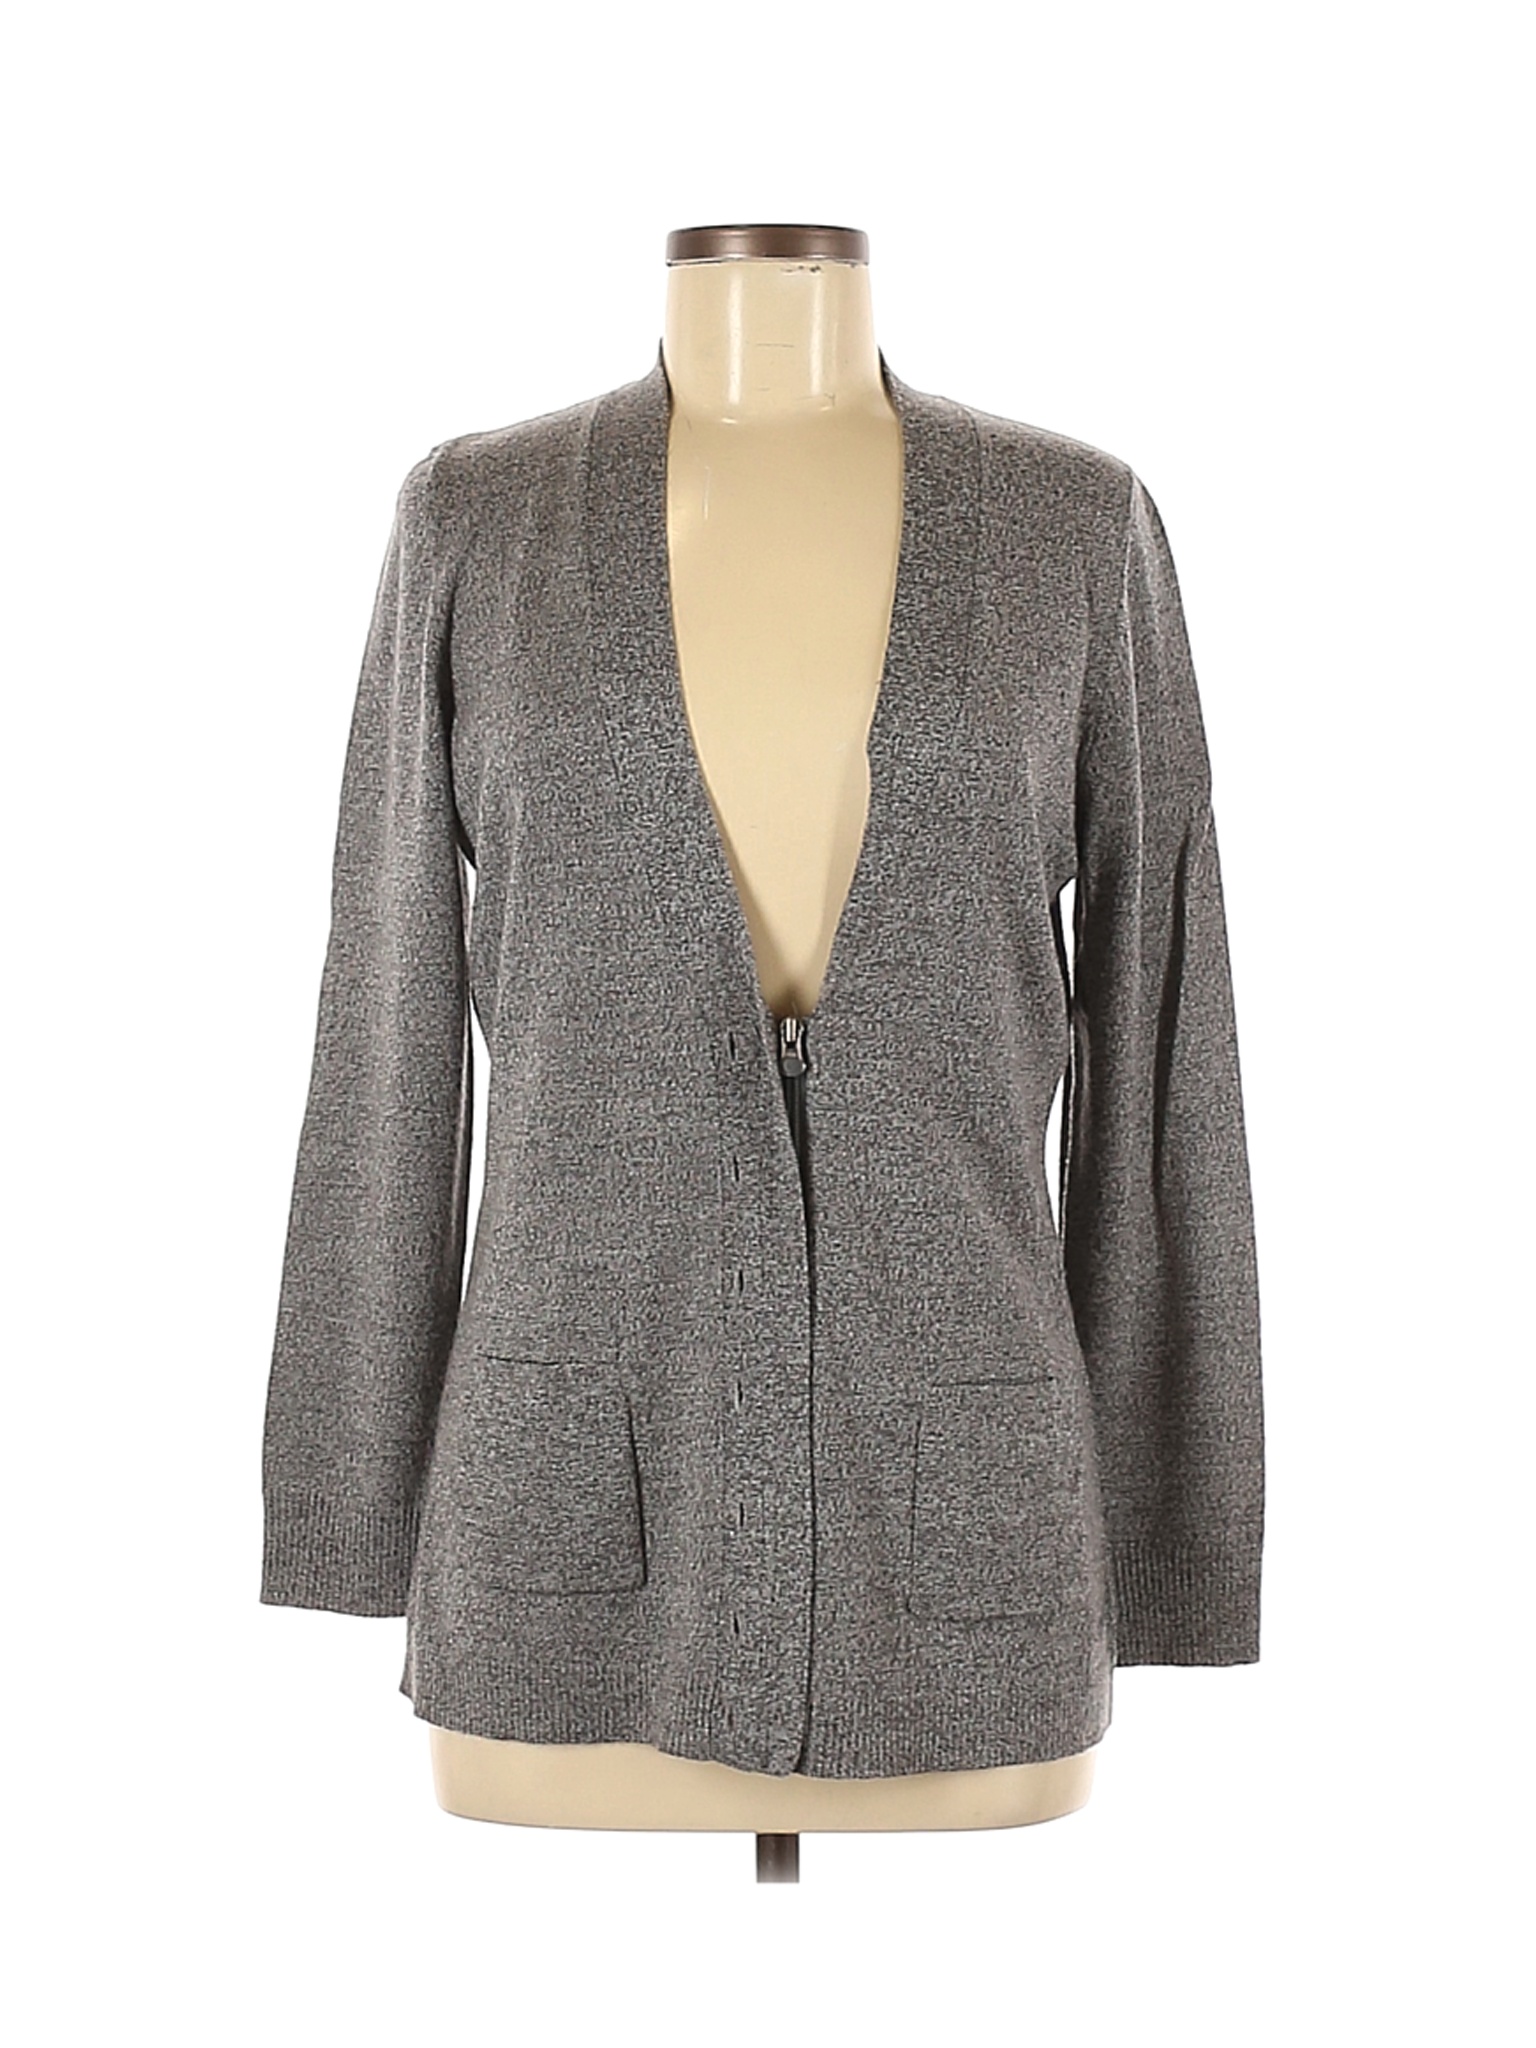 Woolrich Women Gray Wool Cardigan M | eBay